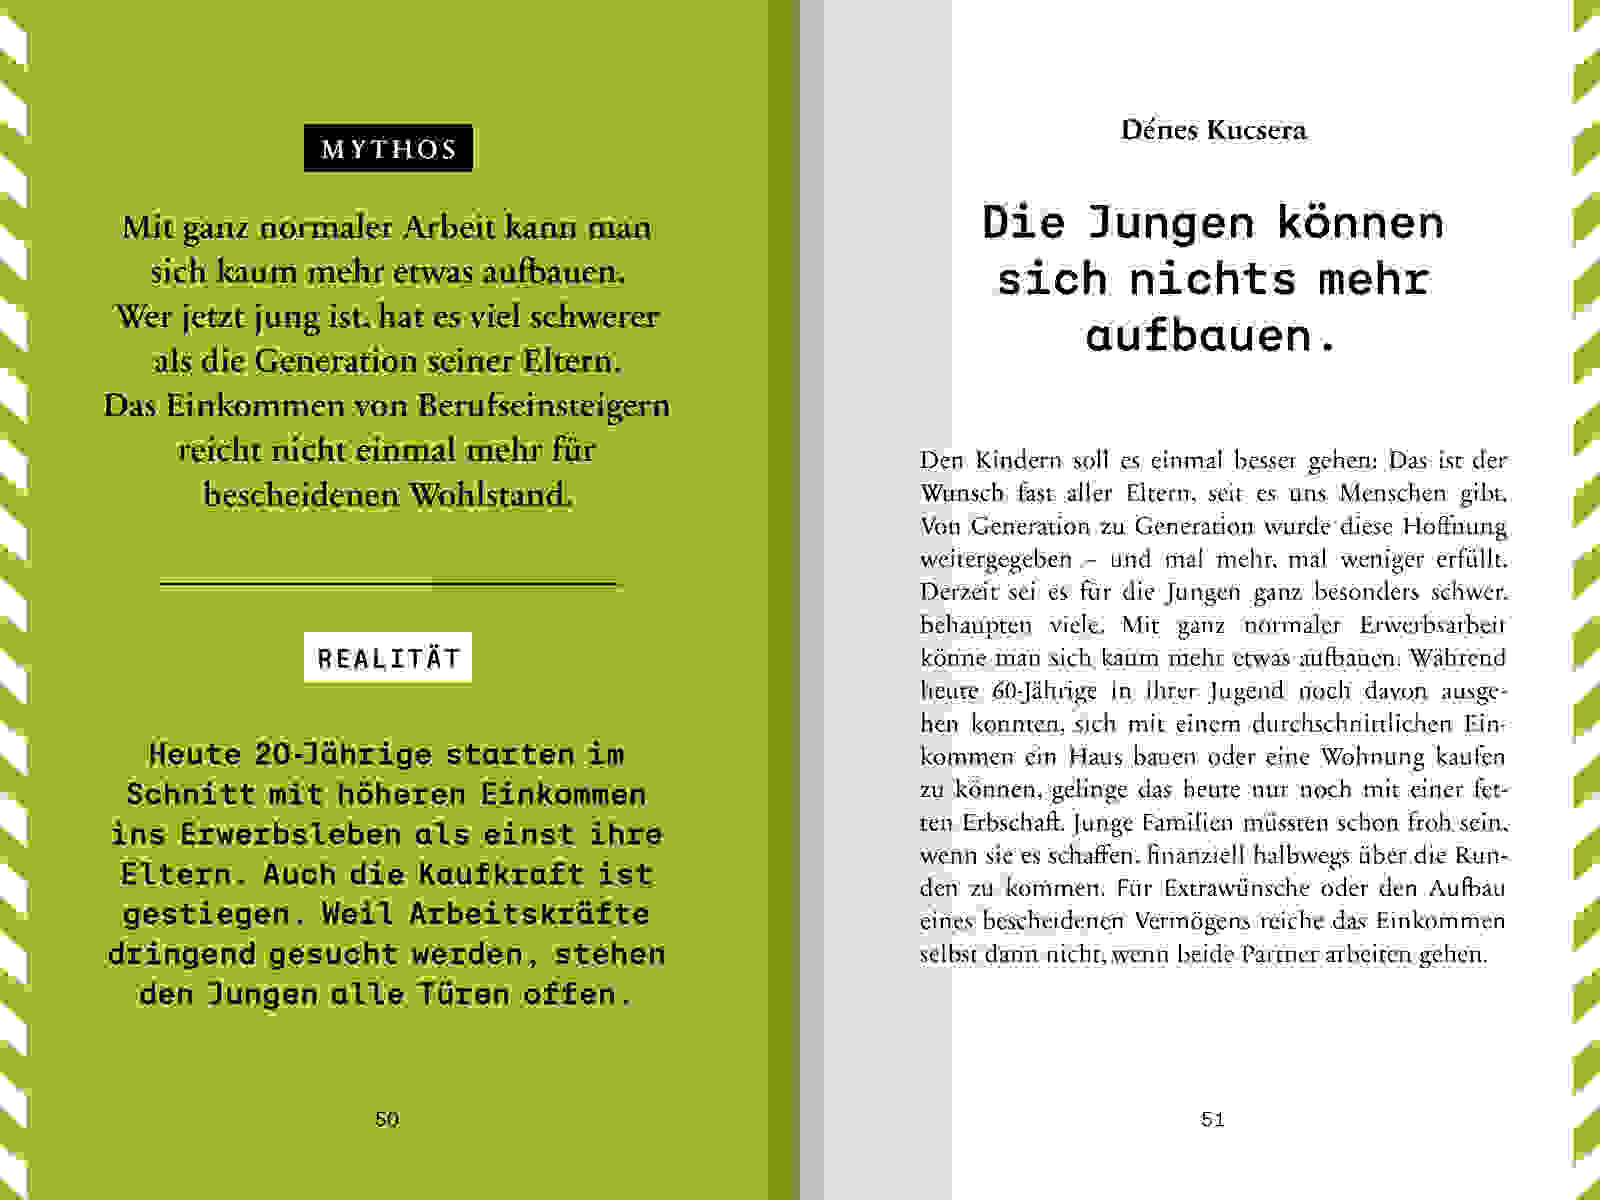 WEB AA Handbuch Wirtschaftsmythen 120x180mm S50 51